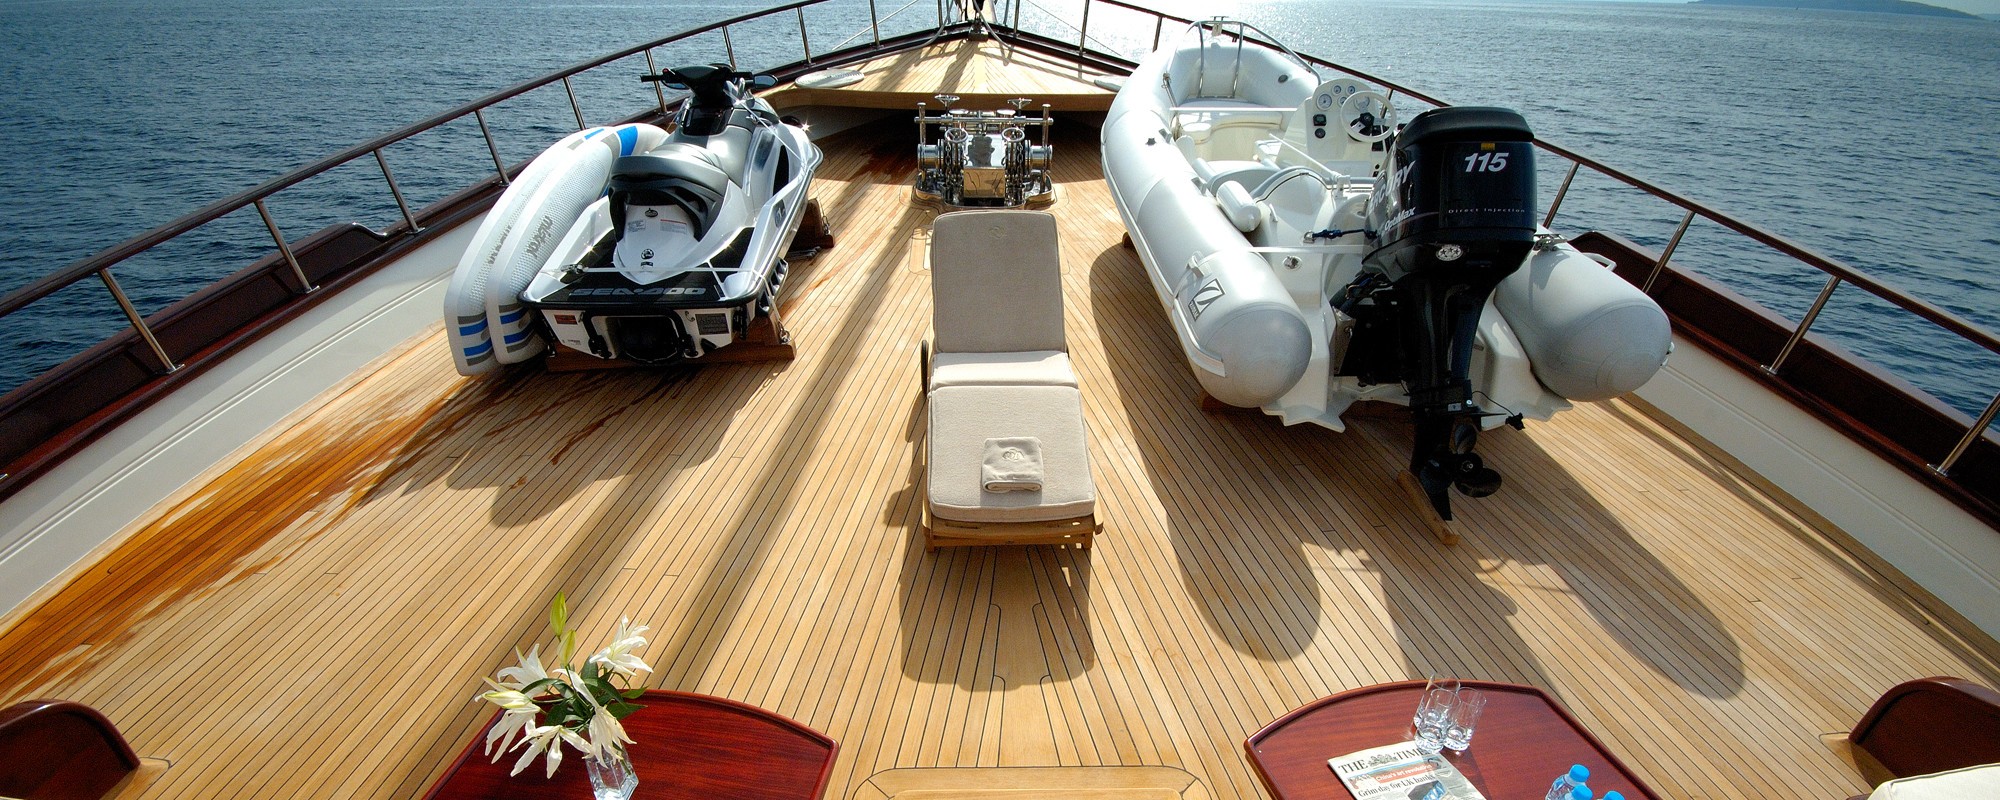 The 41m Yacht RIANA